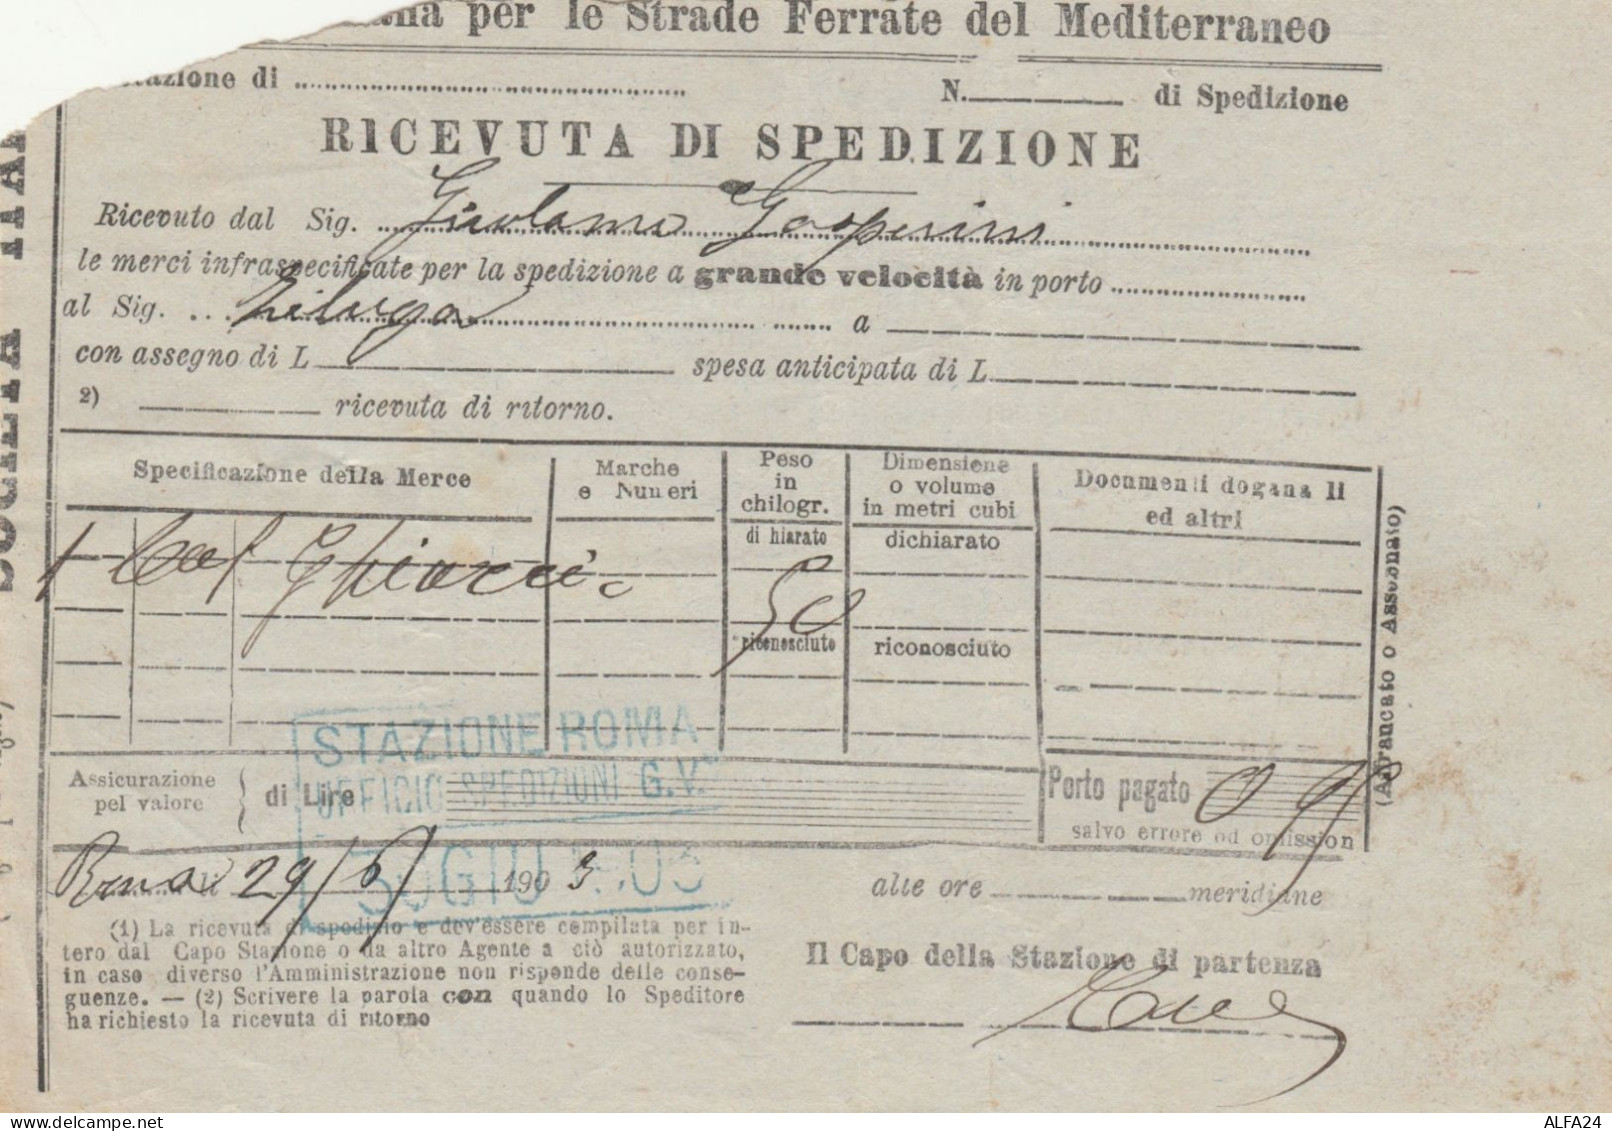 RICEVUTA SPEDIZIONE TRENO 1903 STRADE FERRATE DEL MEDITERRANEO (XF331 - Europa